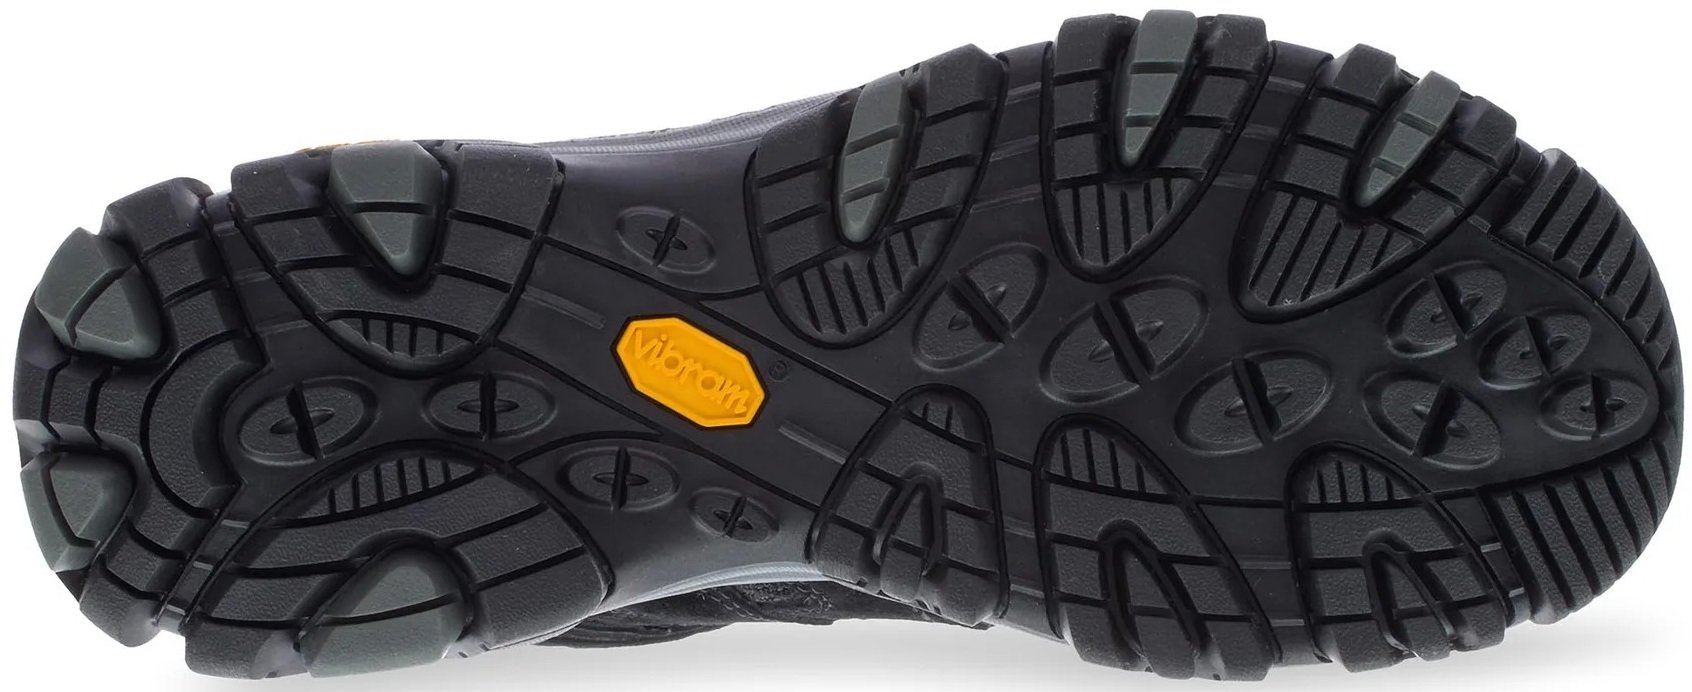 Ботинки мужские Merrell Moab 3 MID GTX black/grey 46.5 черный фото 4